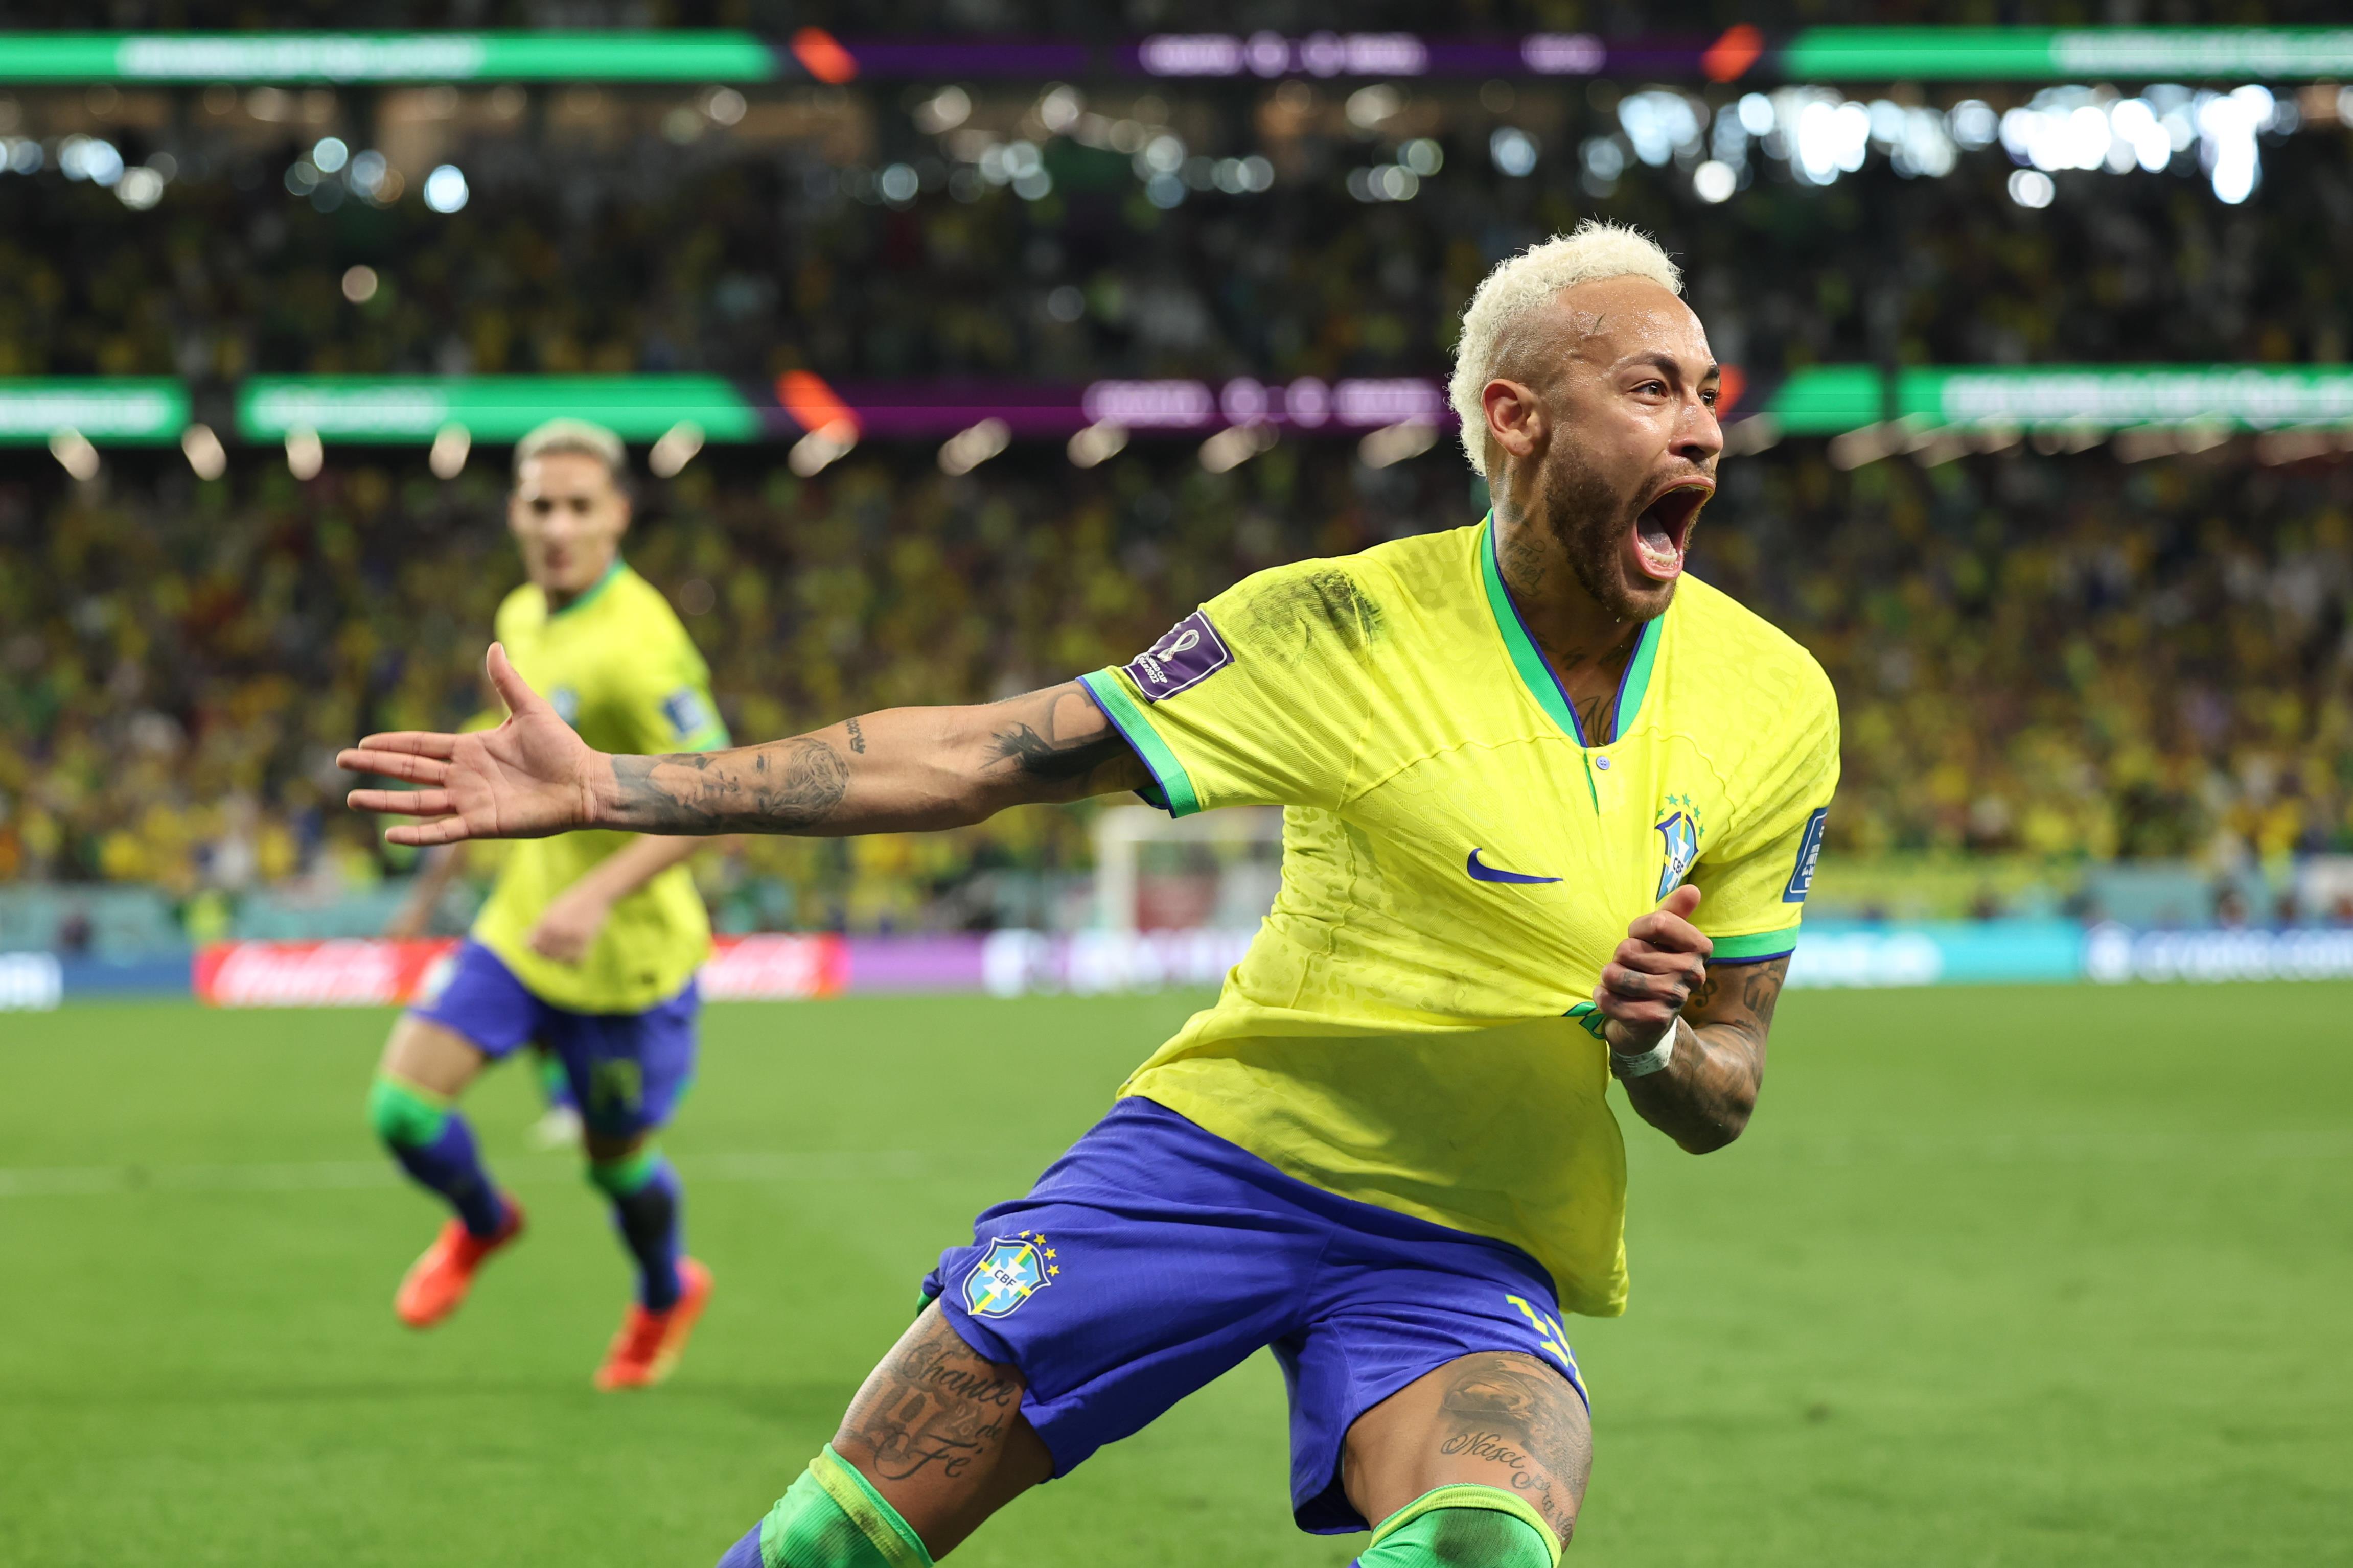 77 goals: Neymar Jr. joins Pelé as the greatest Brazil National Team top  scorer